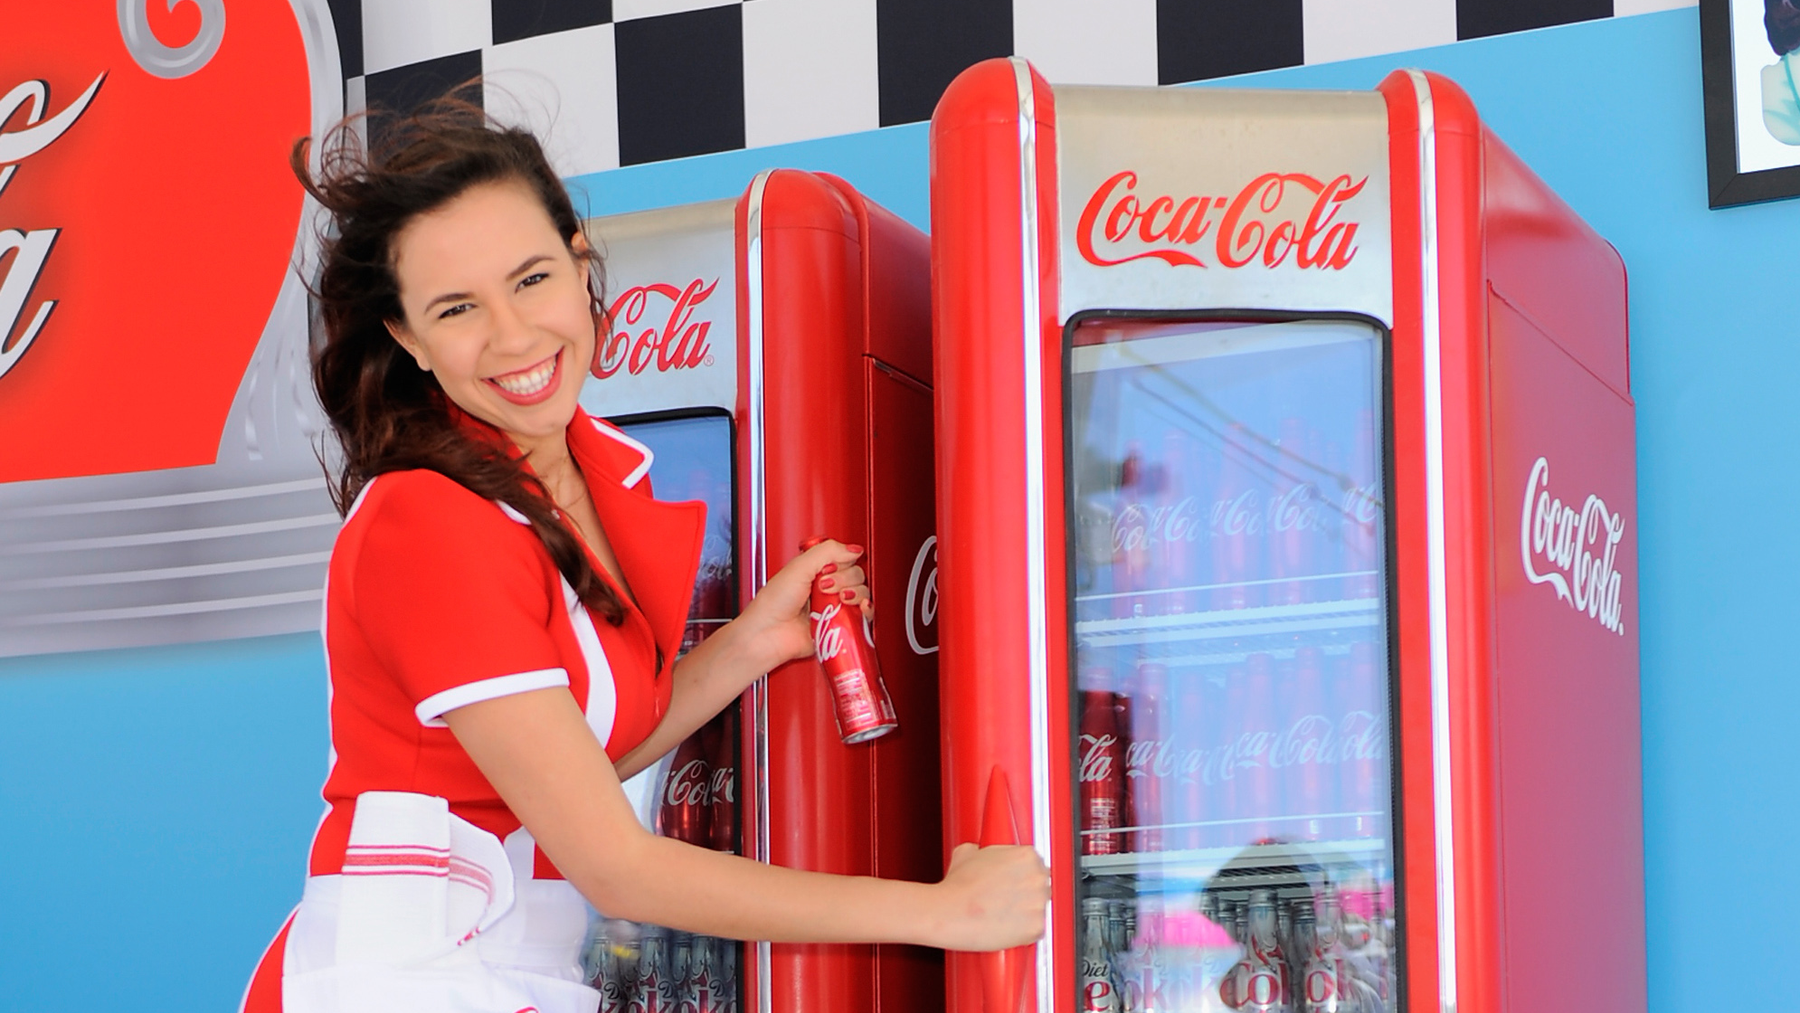 Erstmals in der 130-jährigen Geschichte wird Cola ein einheitliches Design bekommen.